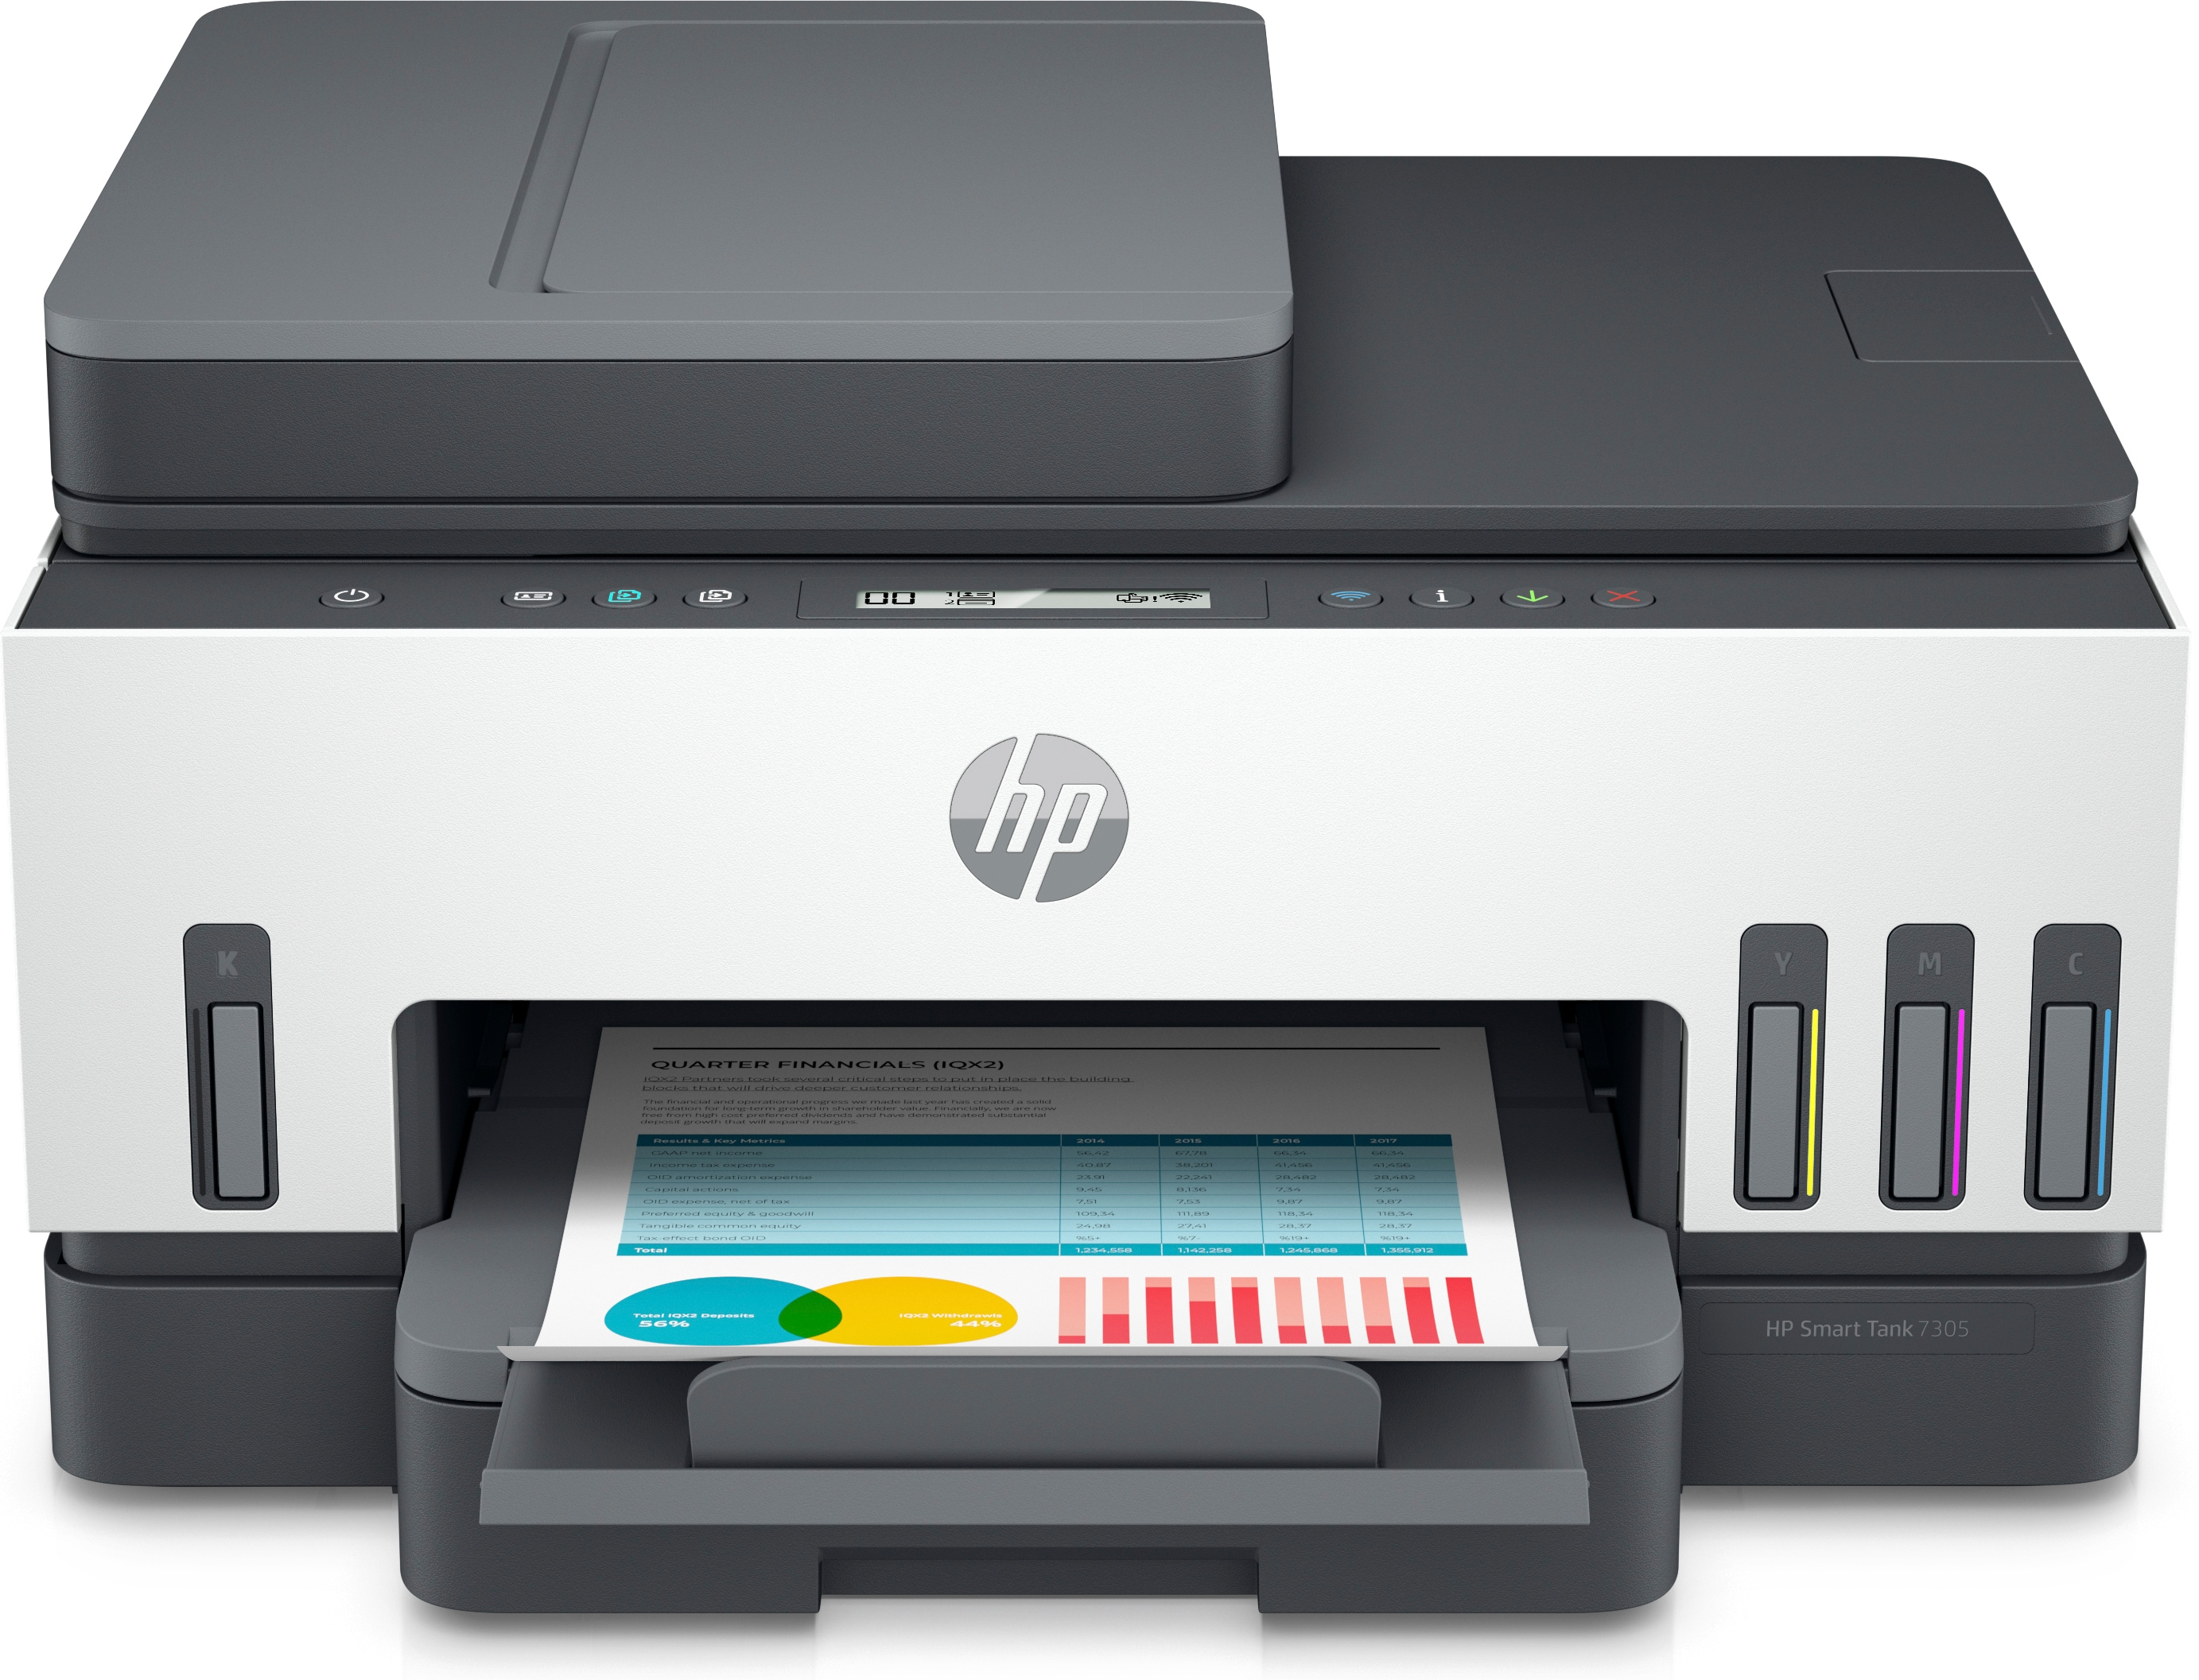 HP HP Smart Tank 7305 All-in-One, Kleur, Printer voor Thuis en thuiskantoor, Printen, scannen, kopi&#235;ren, automatische documentinvoer, draadloos, Invoer voor 35 vel; Scans naar pdf; Dubbelzijdig printen